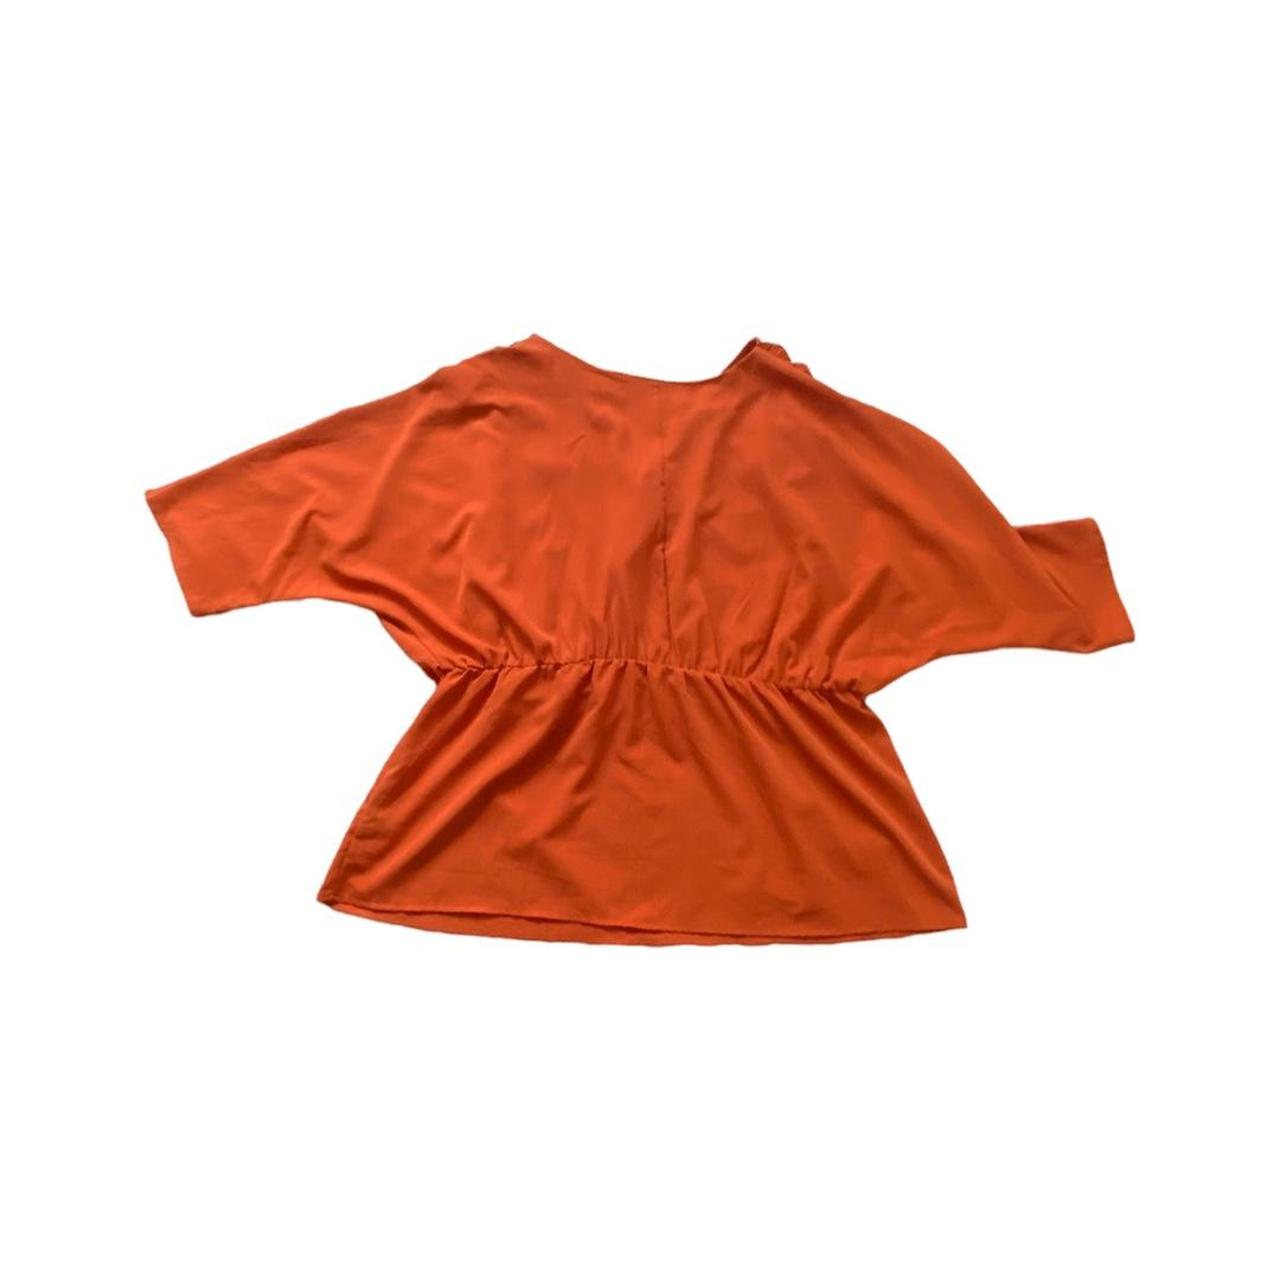 ASOS Women's Orange Blouse (2)